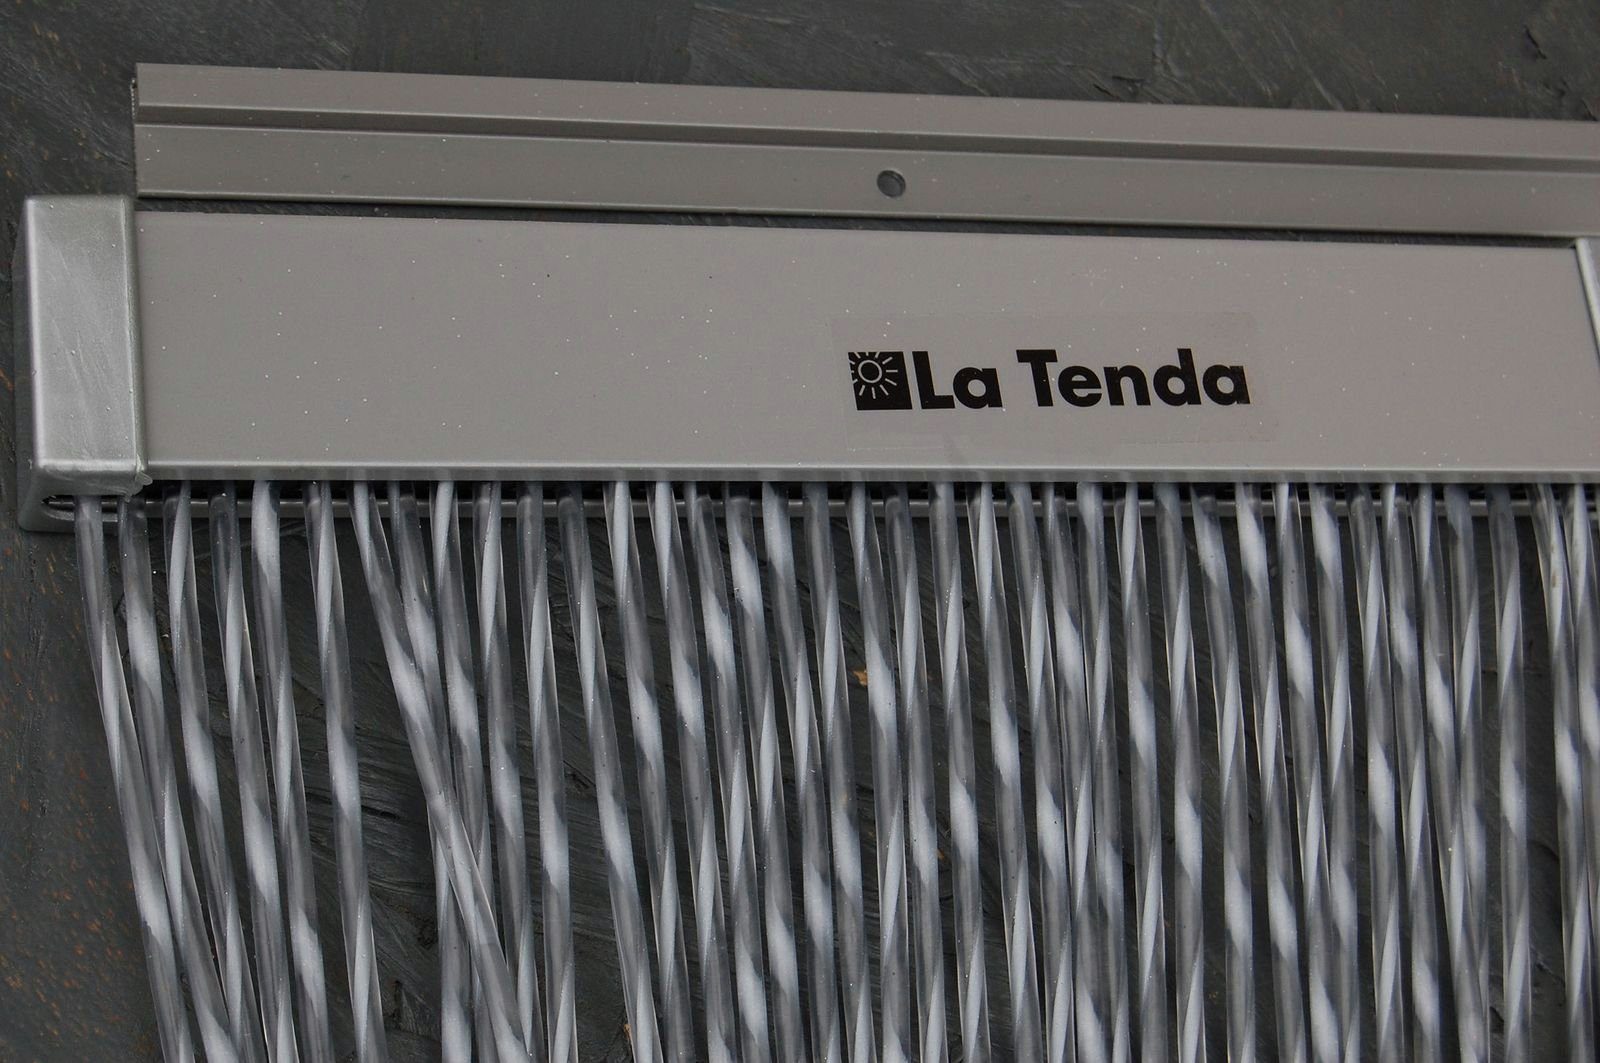 Insektenschutz-Vorhang La Breite grau, Tenda x 2 und cm, 230 Tenda - 120 PVC kürzbar XL Länge La SIENA Streifenvorhang individuell